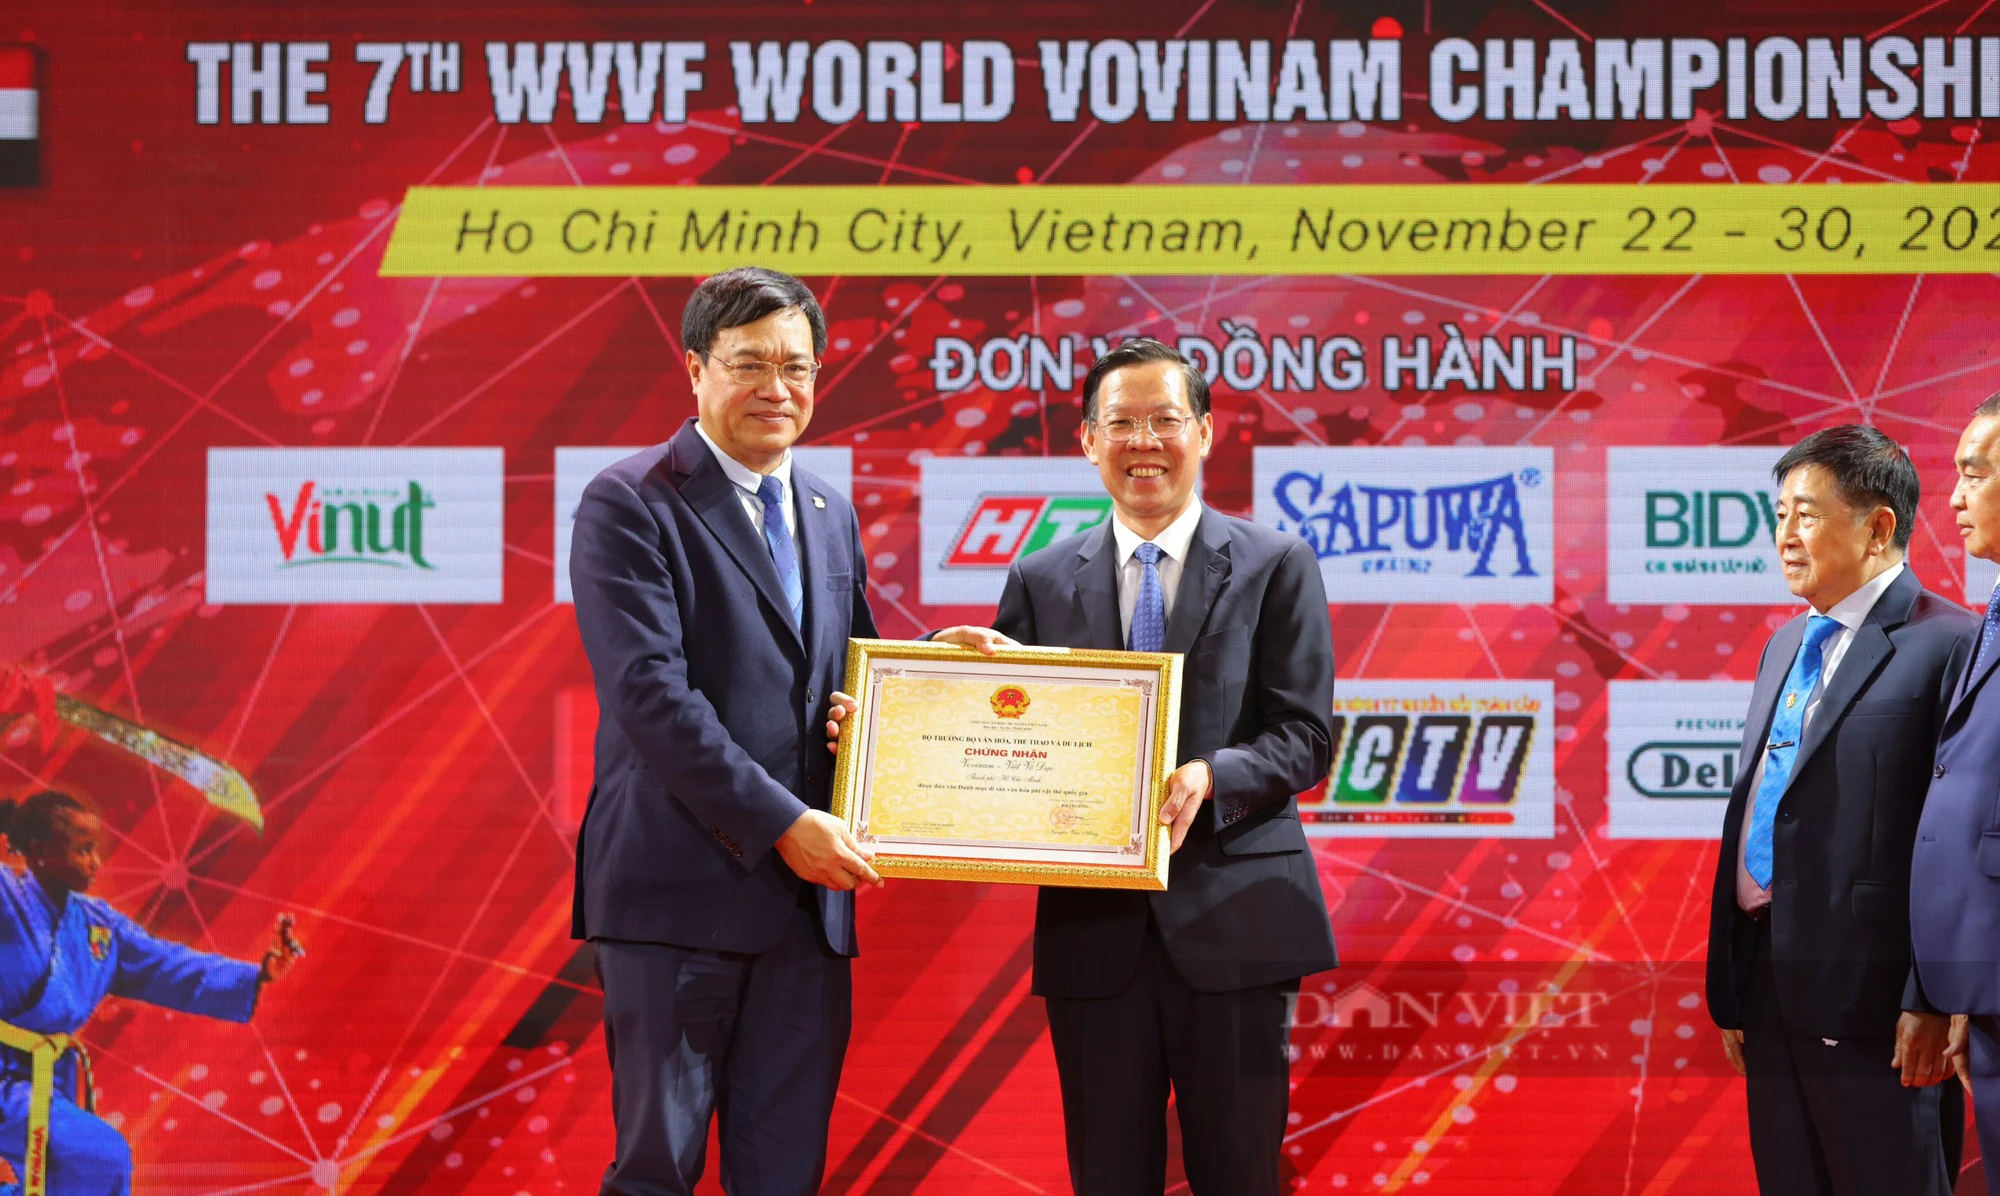 Chủ tịch UBND TP.HCM, Phan Văn Mãi: &quot;Vovinam là sứ giả văn hóa kết nối cộng đồng quốc tế trên tinh thần thượng võ&quot; - Ảnh 4.